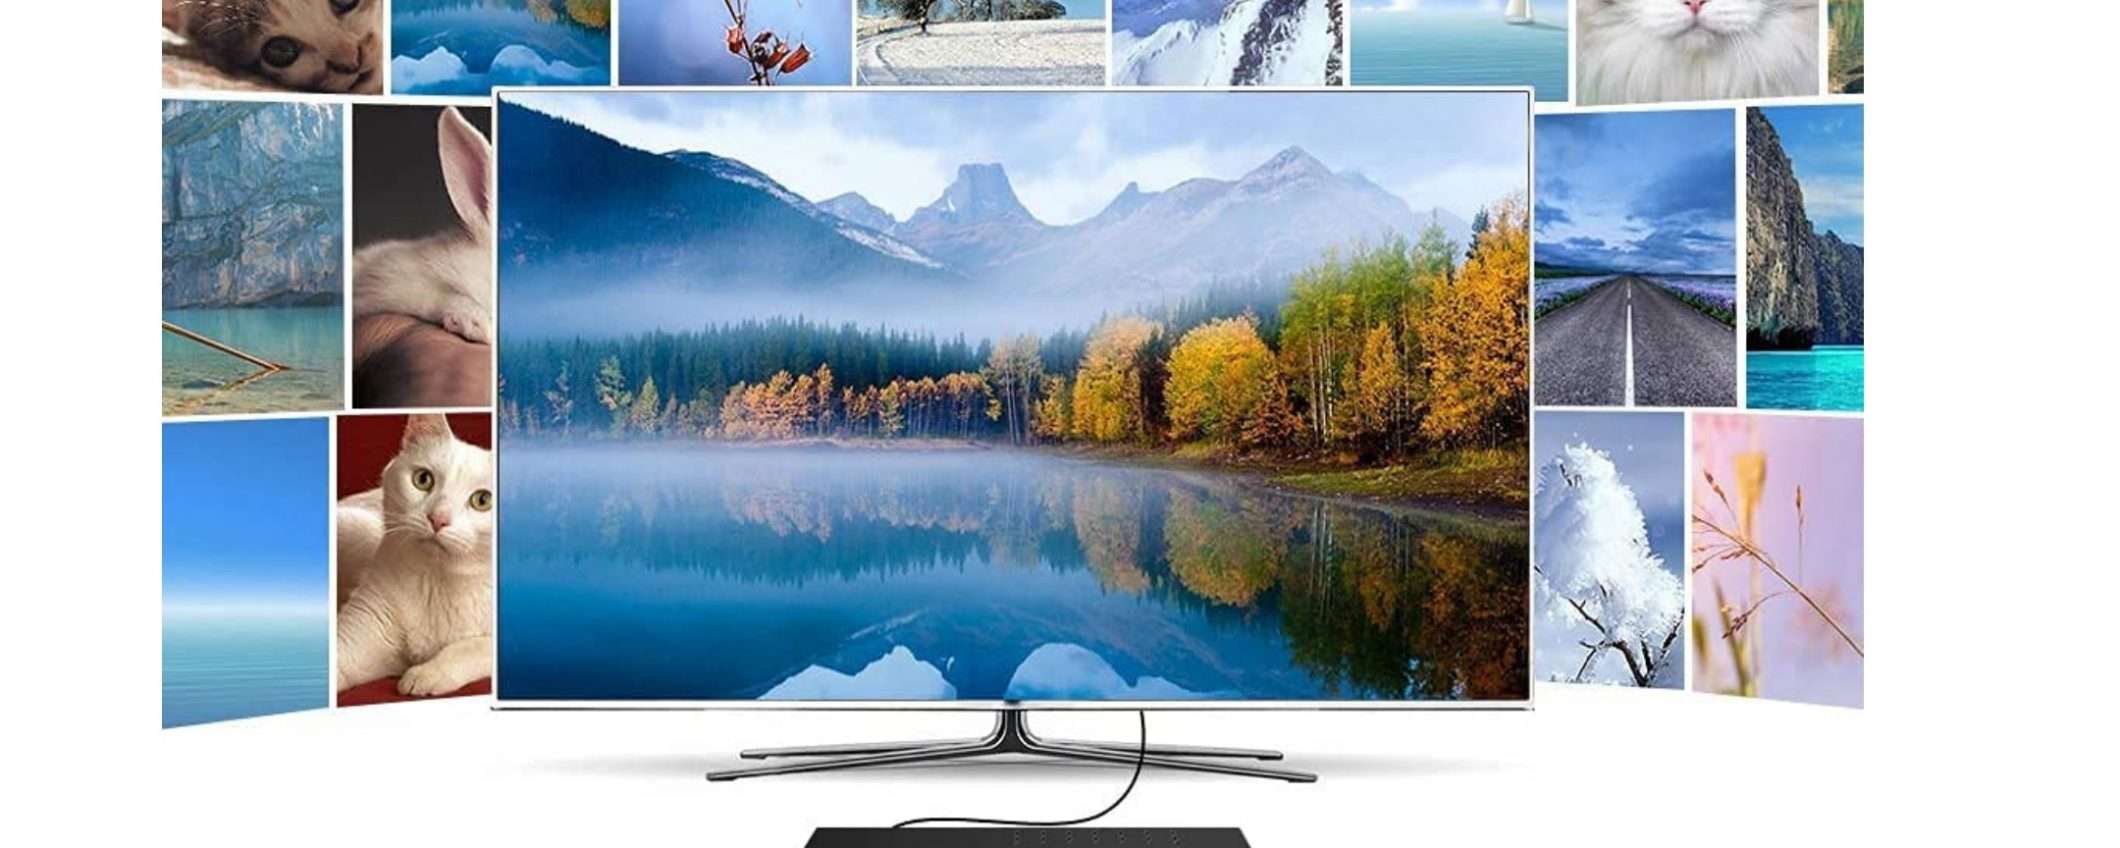 DVB-T2 e TV box in un unico decoder: aggiorna la TV con Leelbox Digital TV